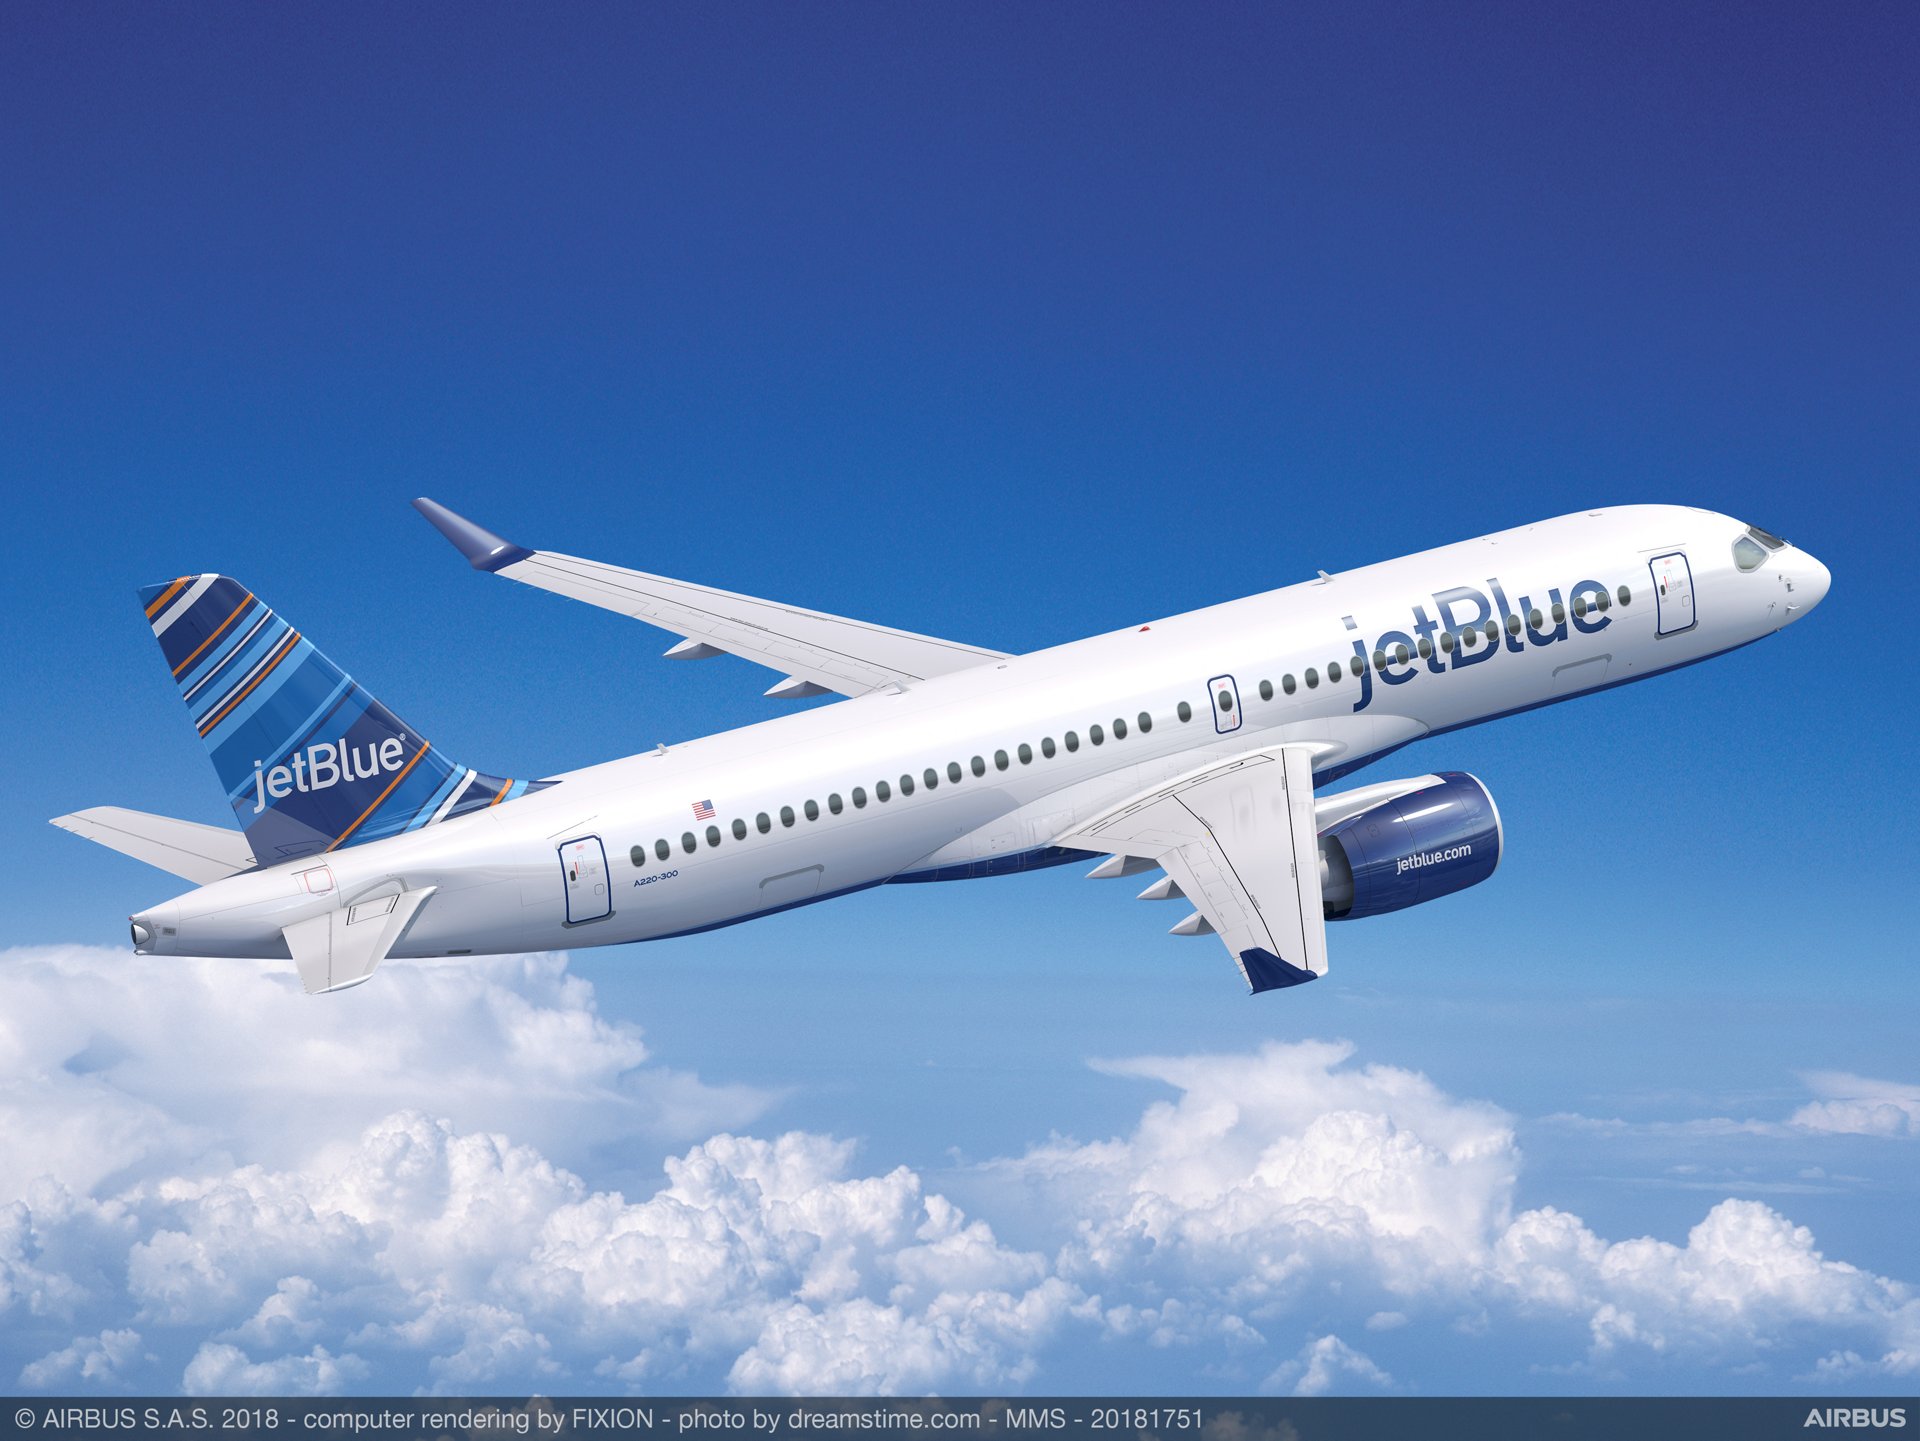 Jetblue Schedule Release 2022 Jetblue Extends London Heathrow Schedule Through October 2022 – Ala Noticias